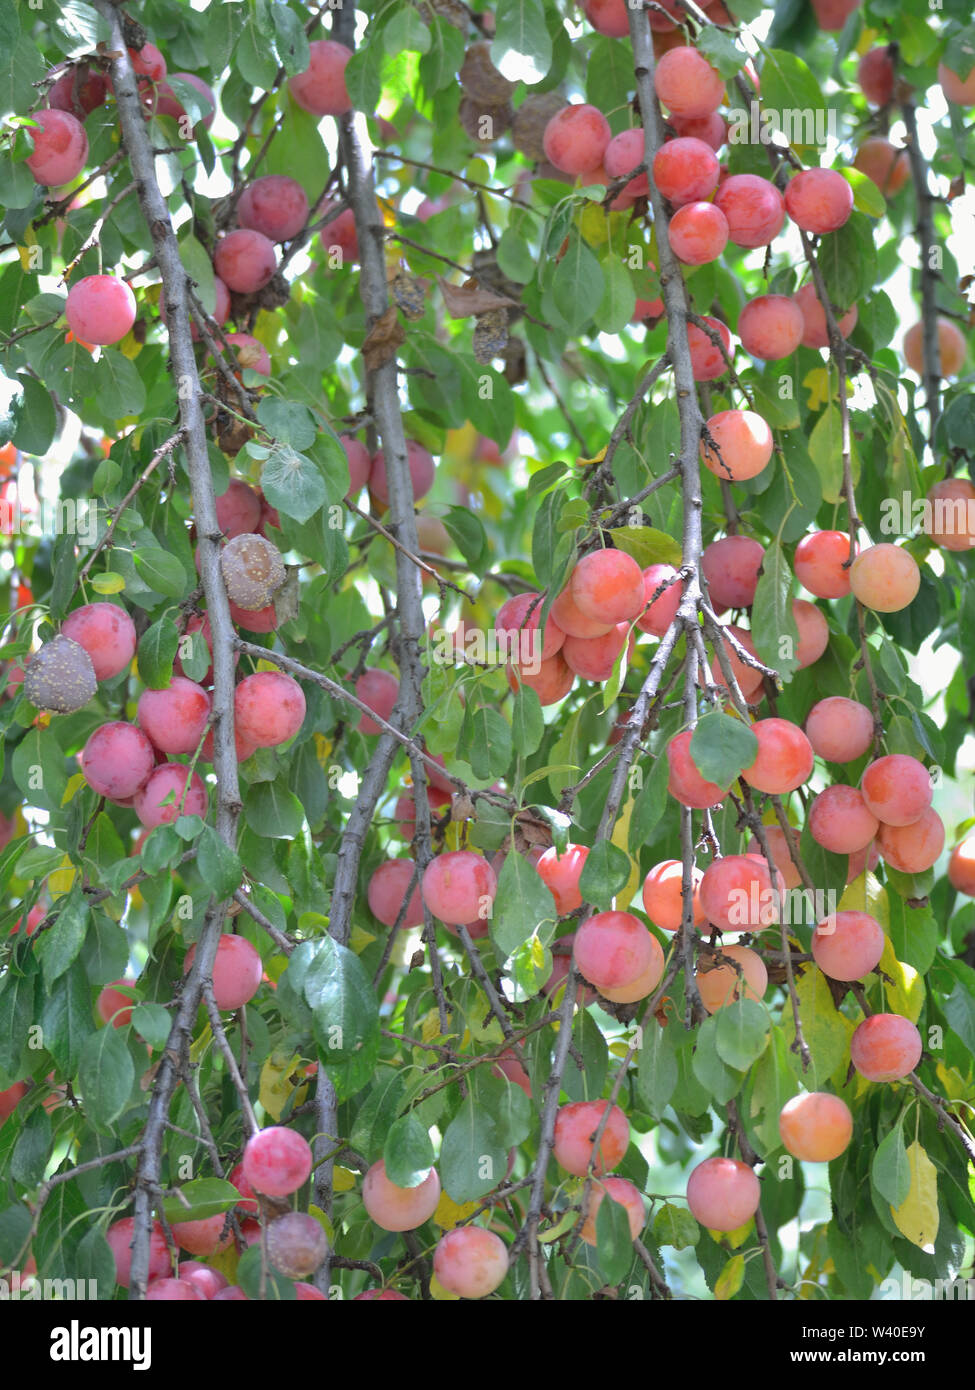 Plums on plum tree, Prunus cerasifera, cherry-plums Stock Photo